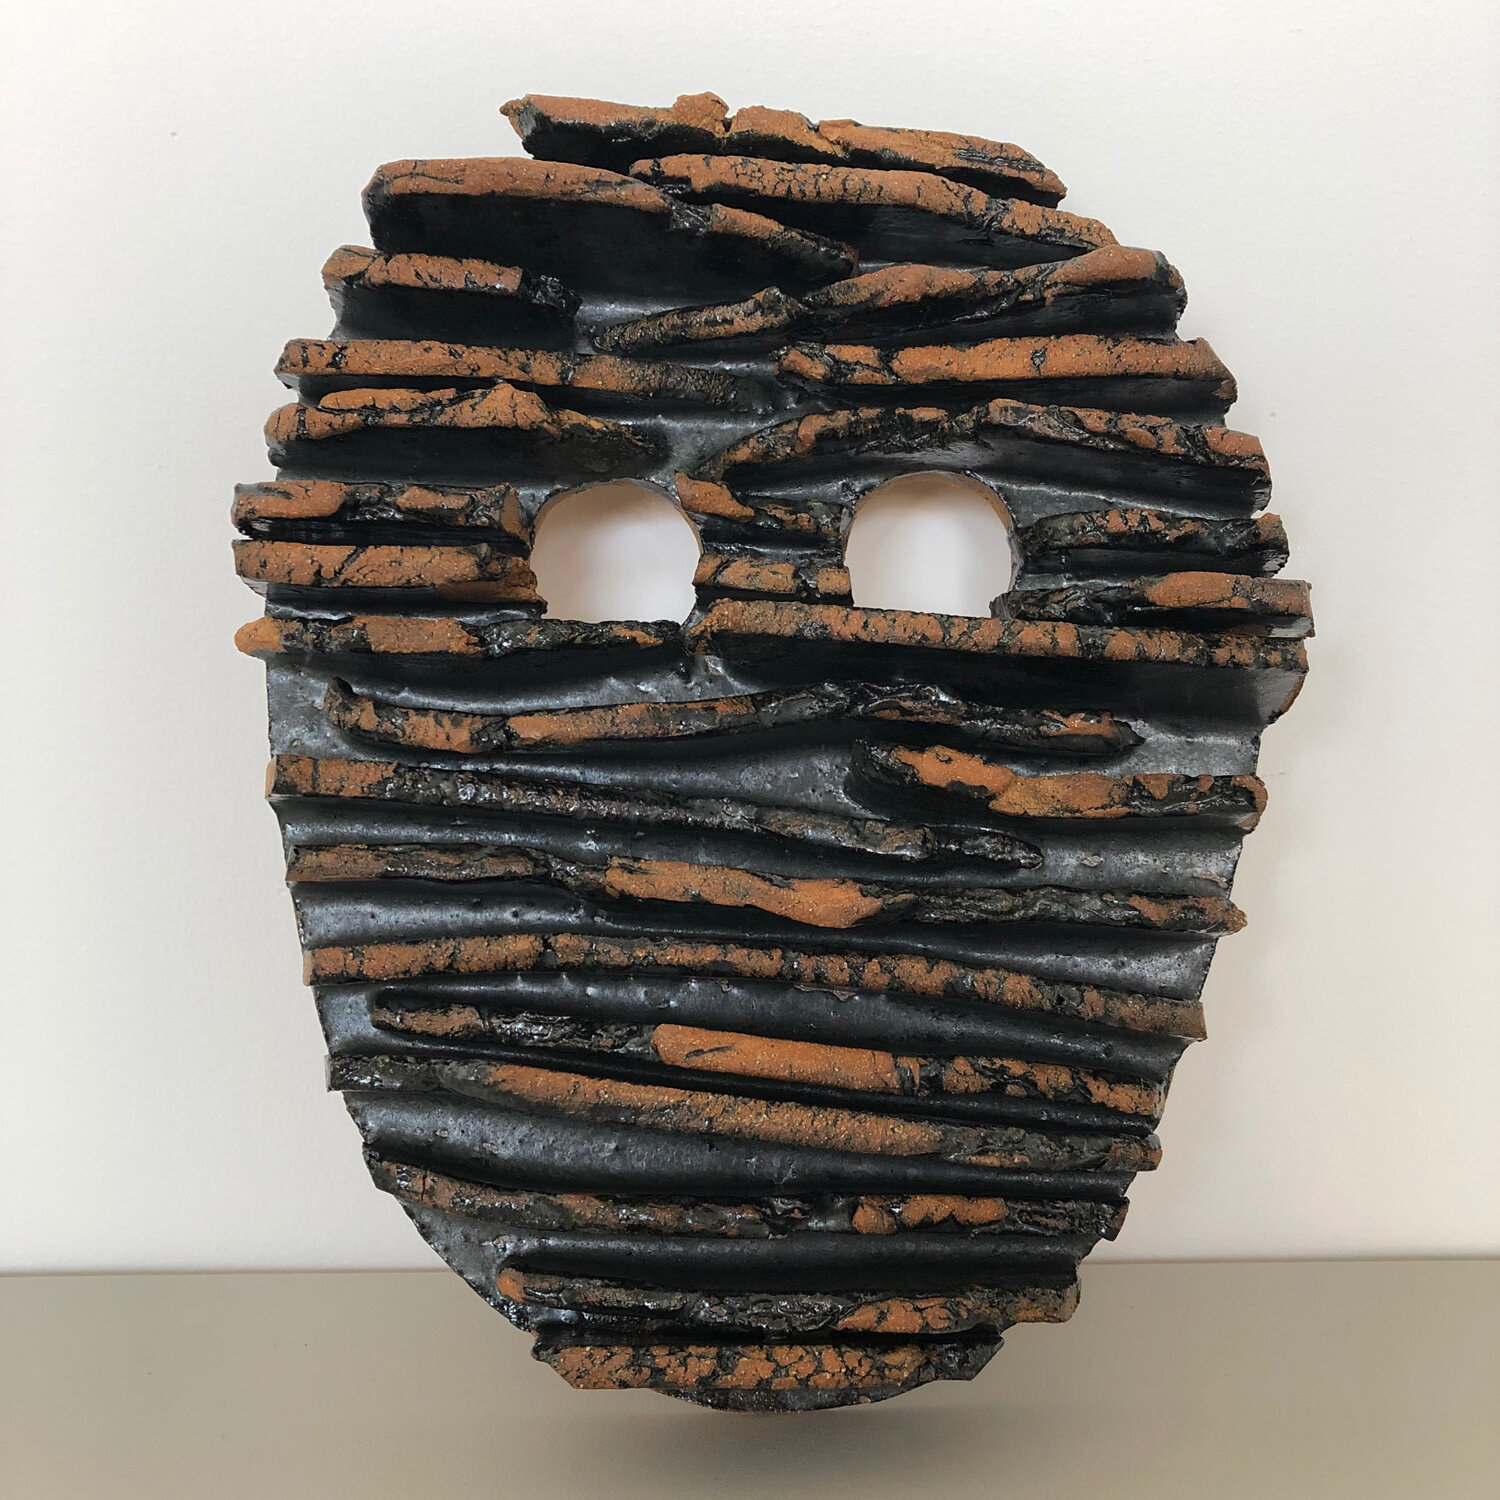 Mask, 2019, glazed ceramic, 11 x 8 x 2"